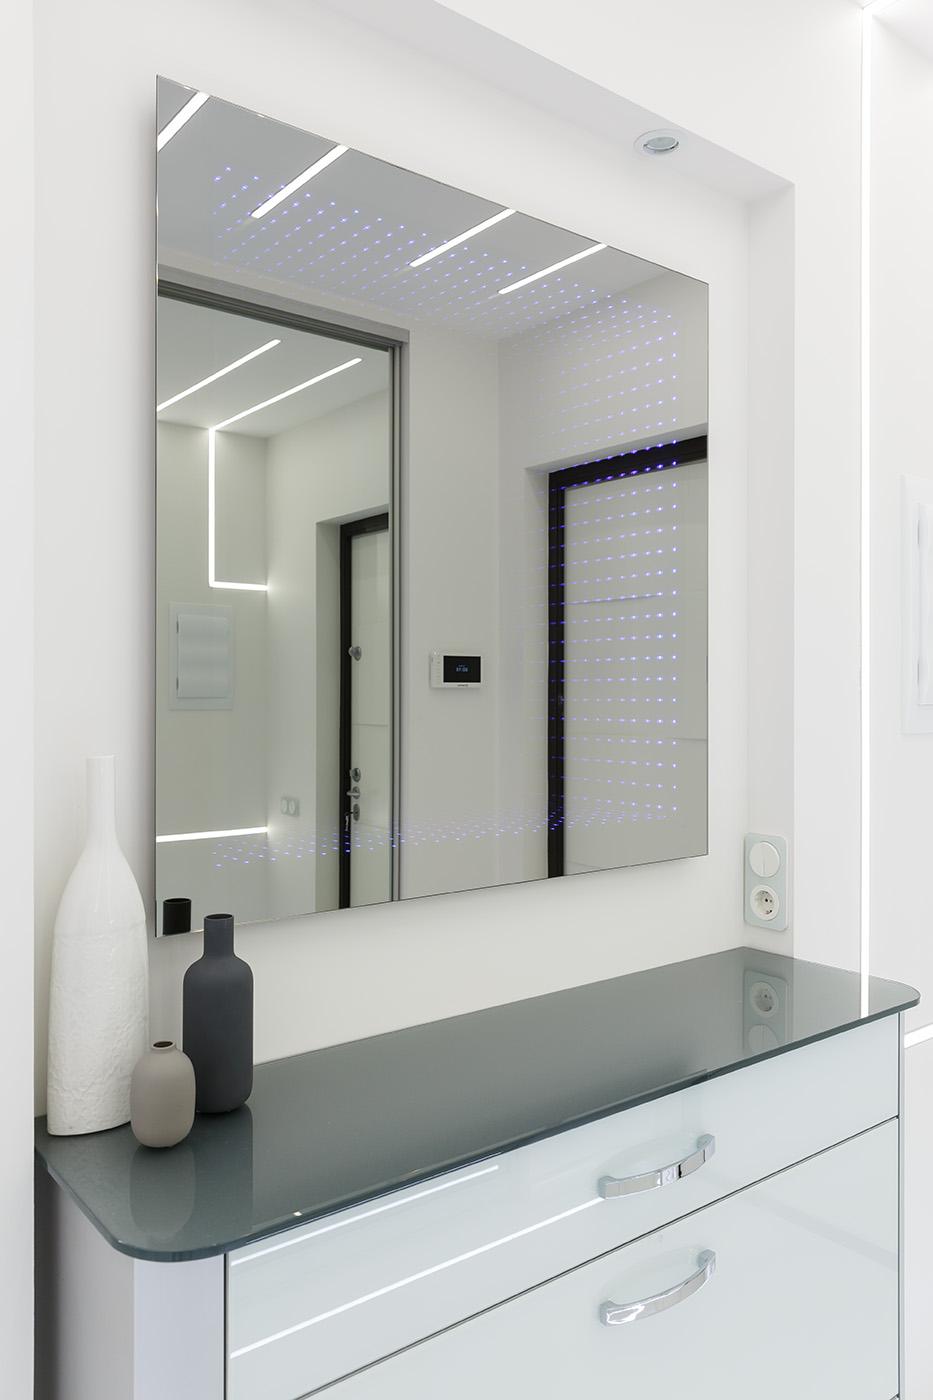 Интерьер ванной с зеркалом на двери, подсветкой настенной, подсветкой светодиодной и с подсветкой